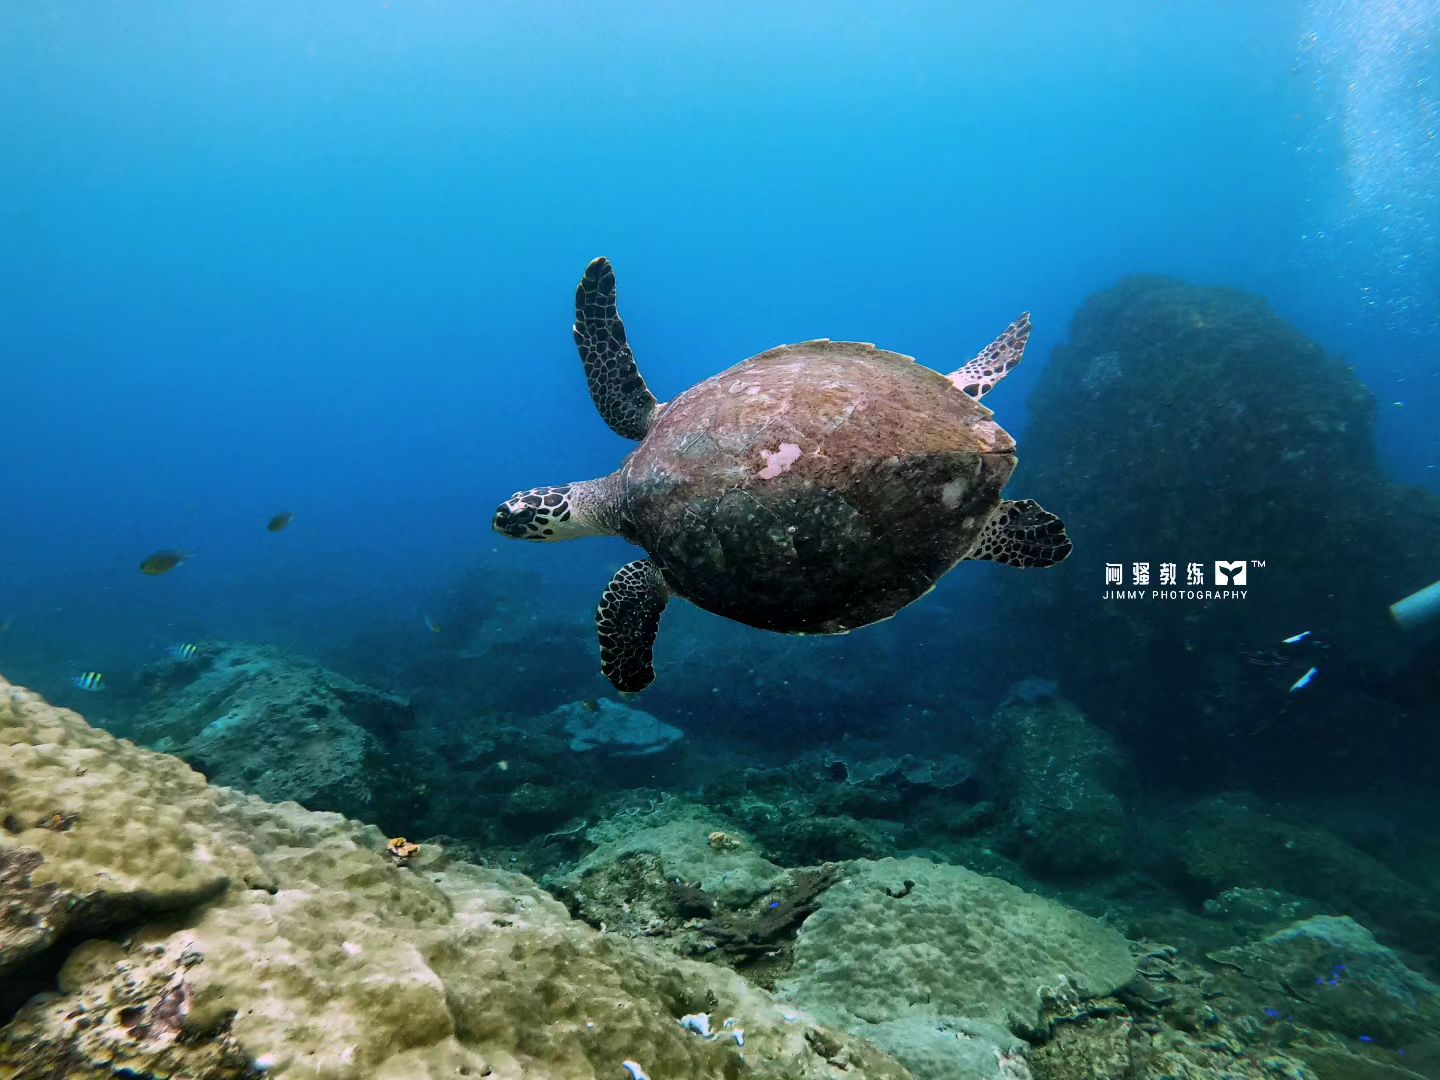 sea turtle at Miri-Sibuti Coral Reefs National Park